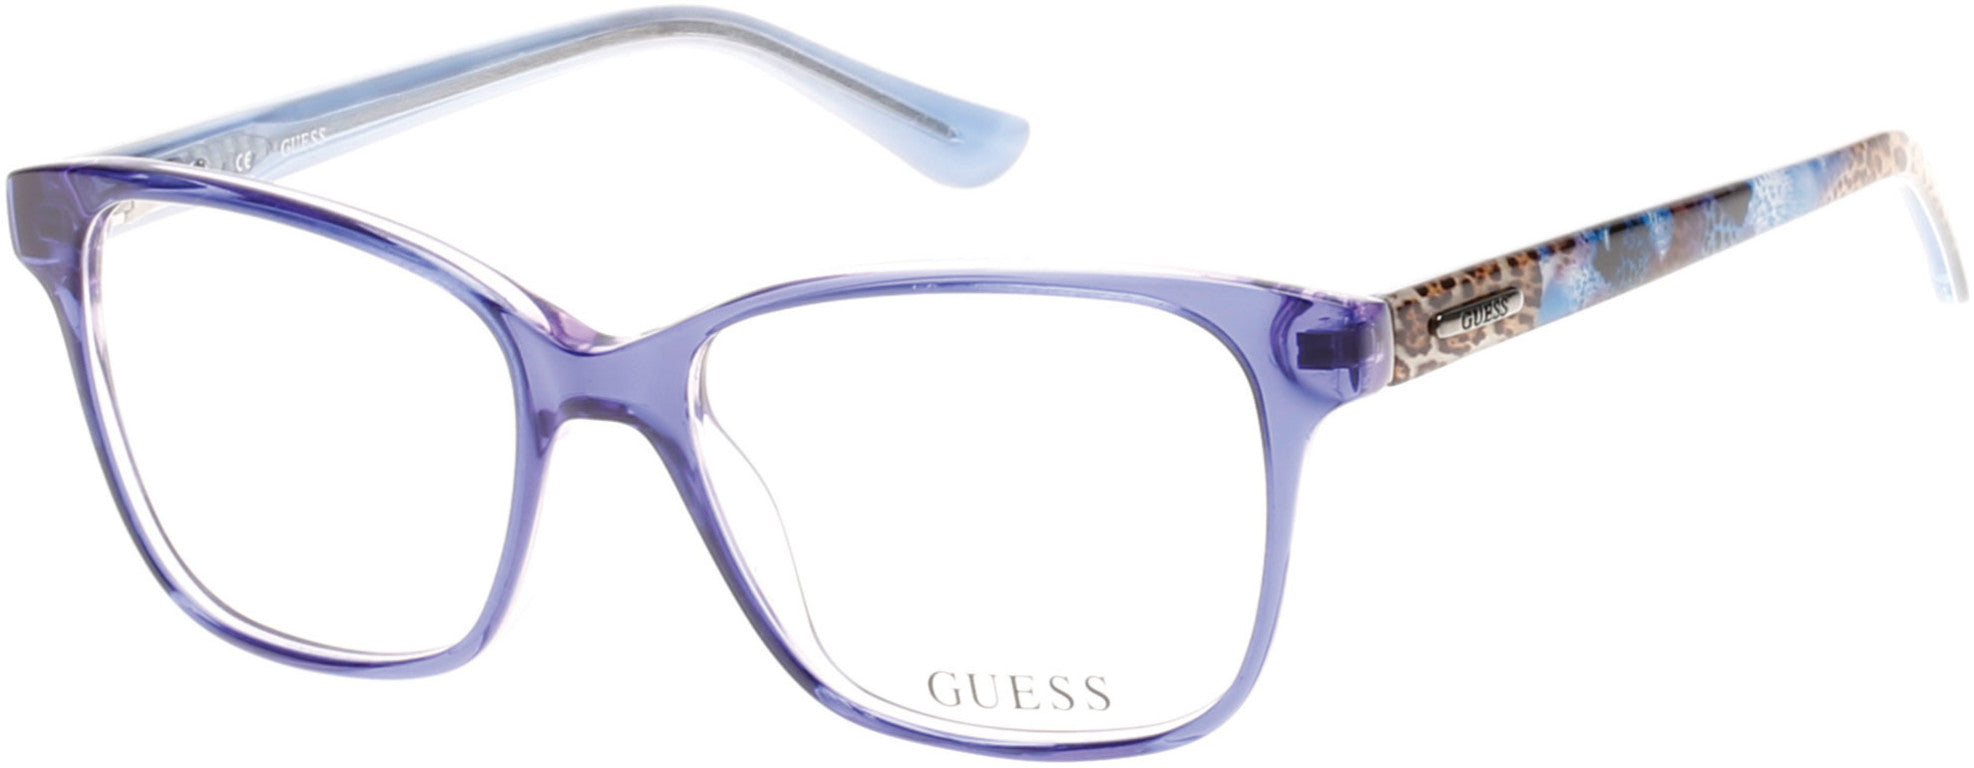 Guess GU2506 Square Eyeglasses 090-090 - Shiny Blue